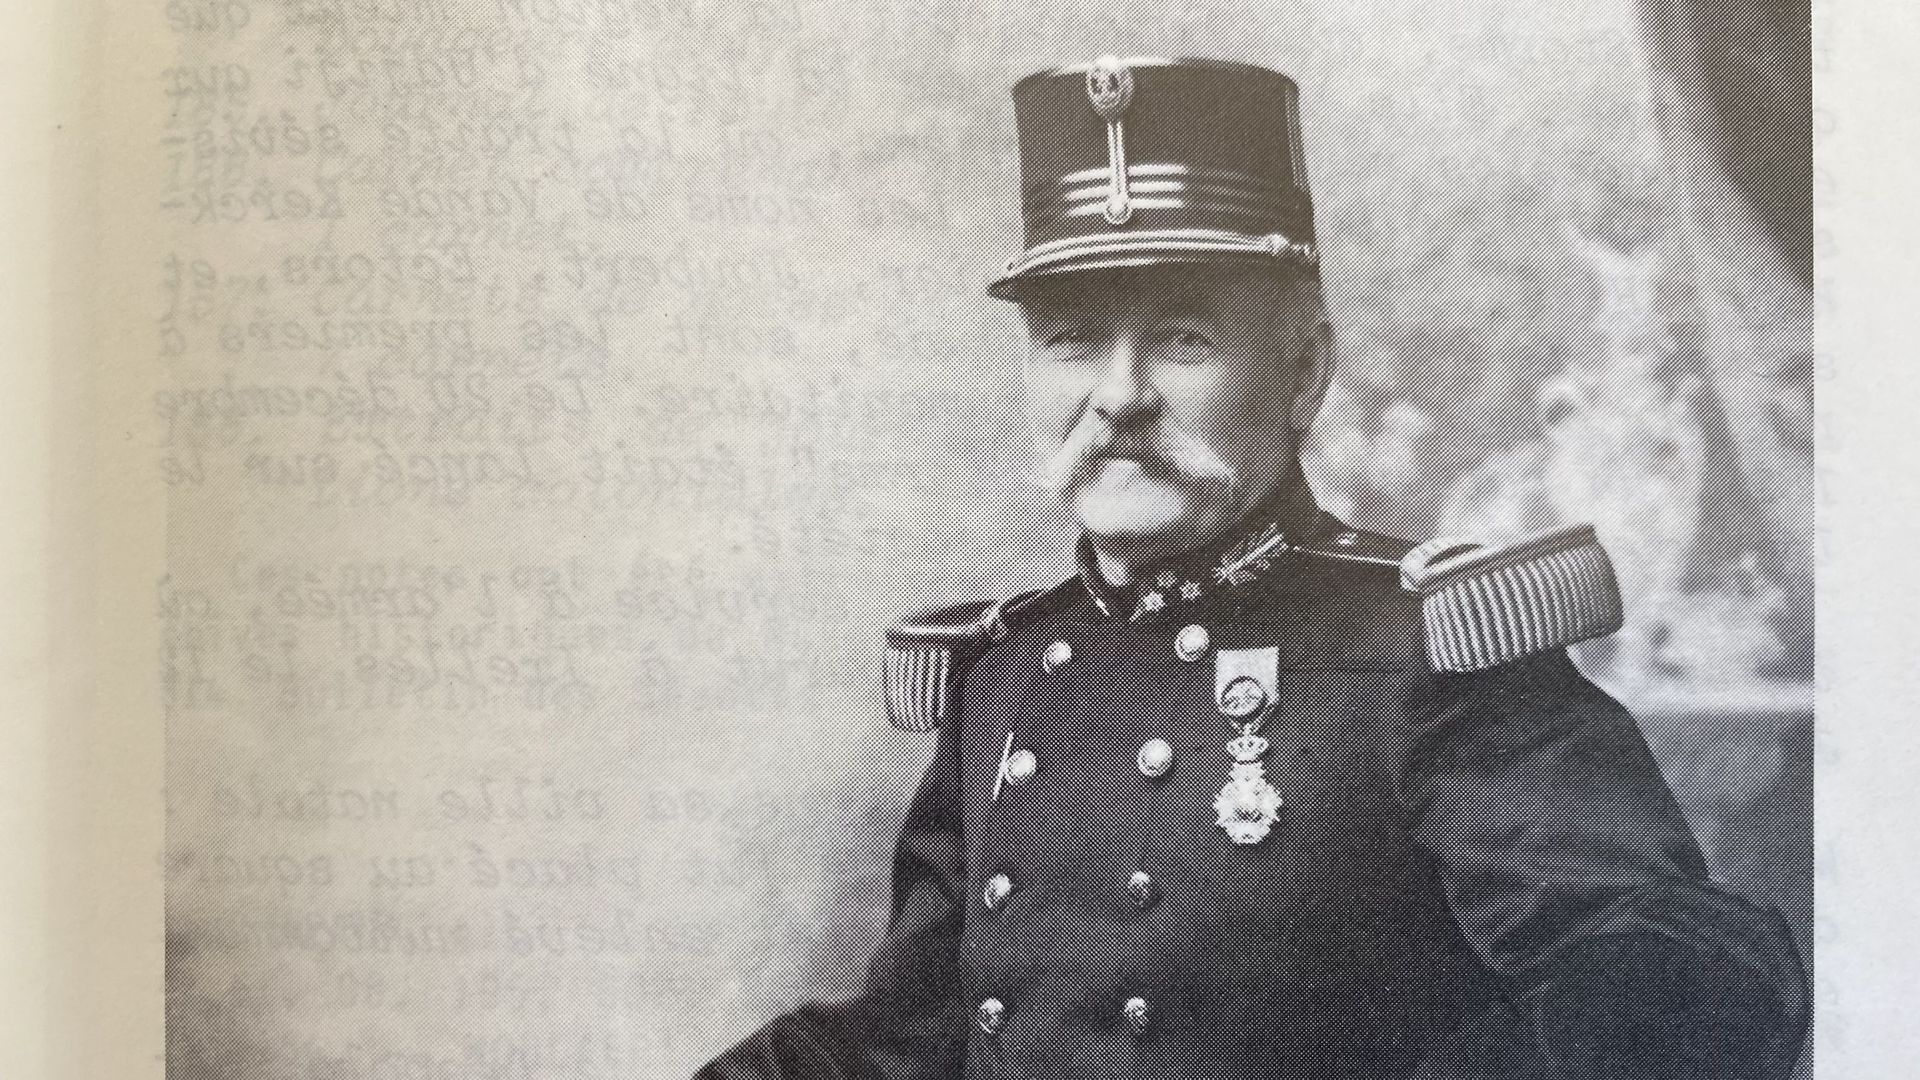 Portrait d'Emile Storms réalisé en 1888 alors qu'il était encore capitaine, publié dans la revue Florinas 